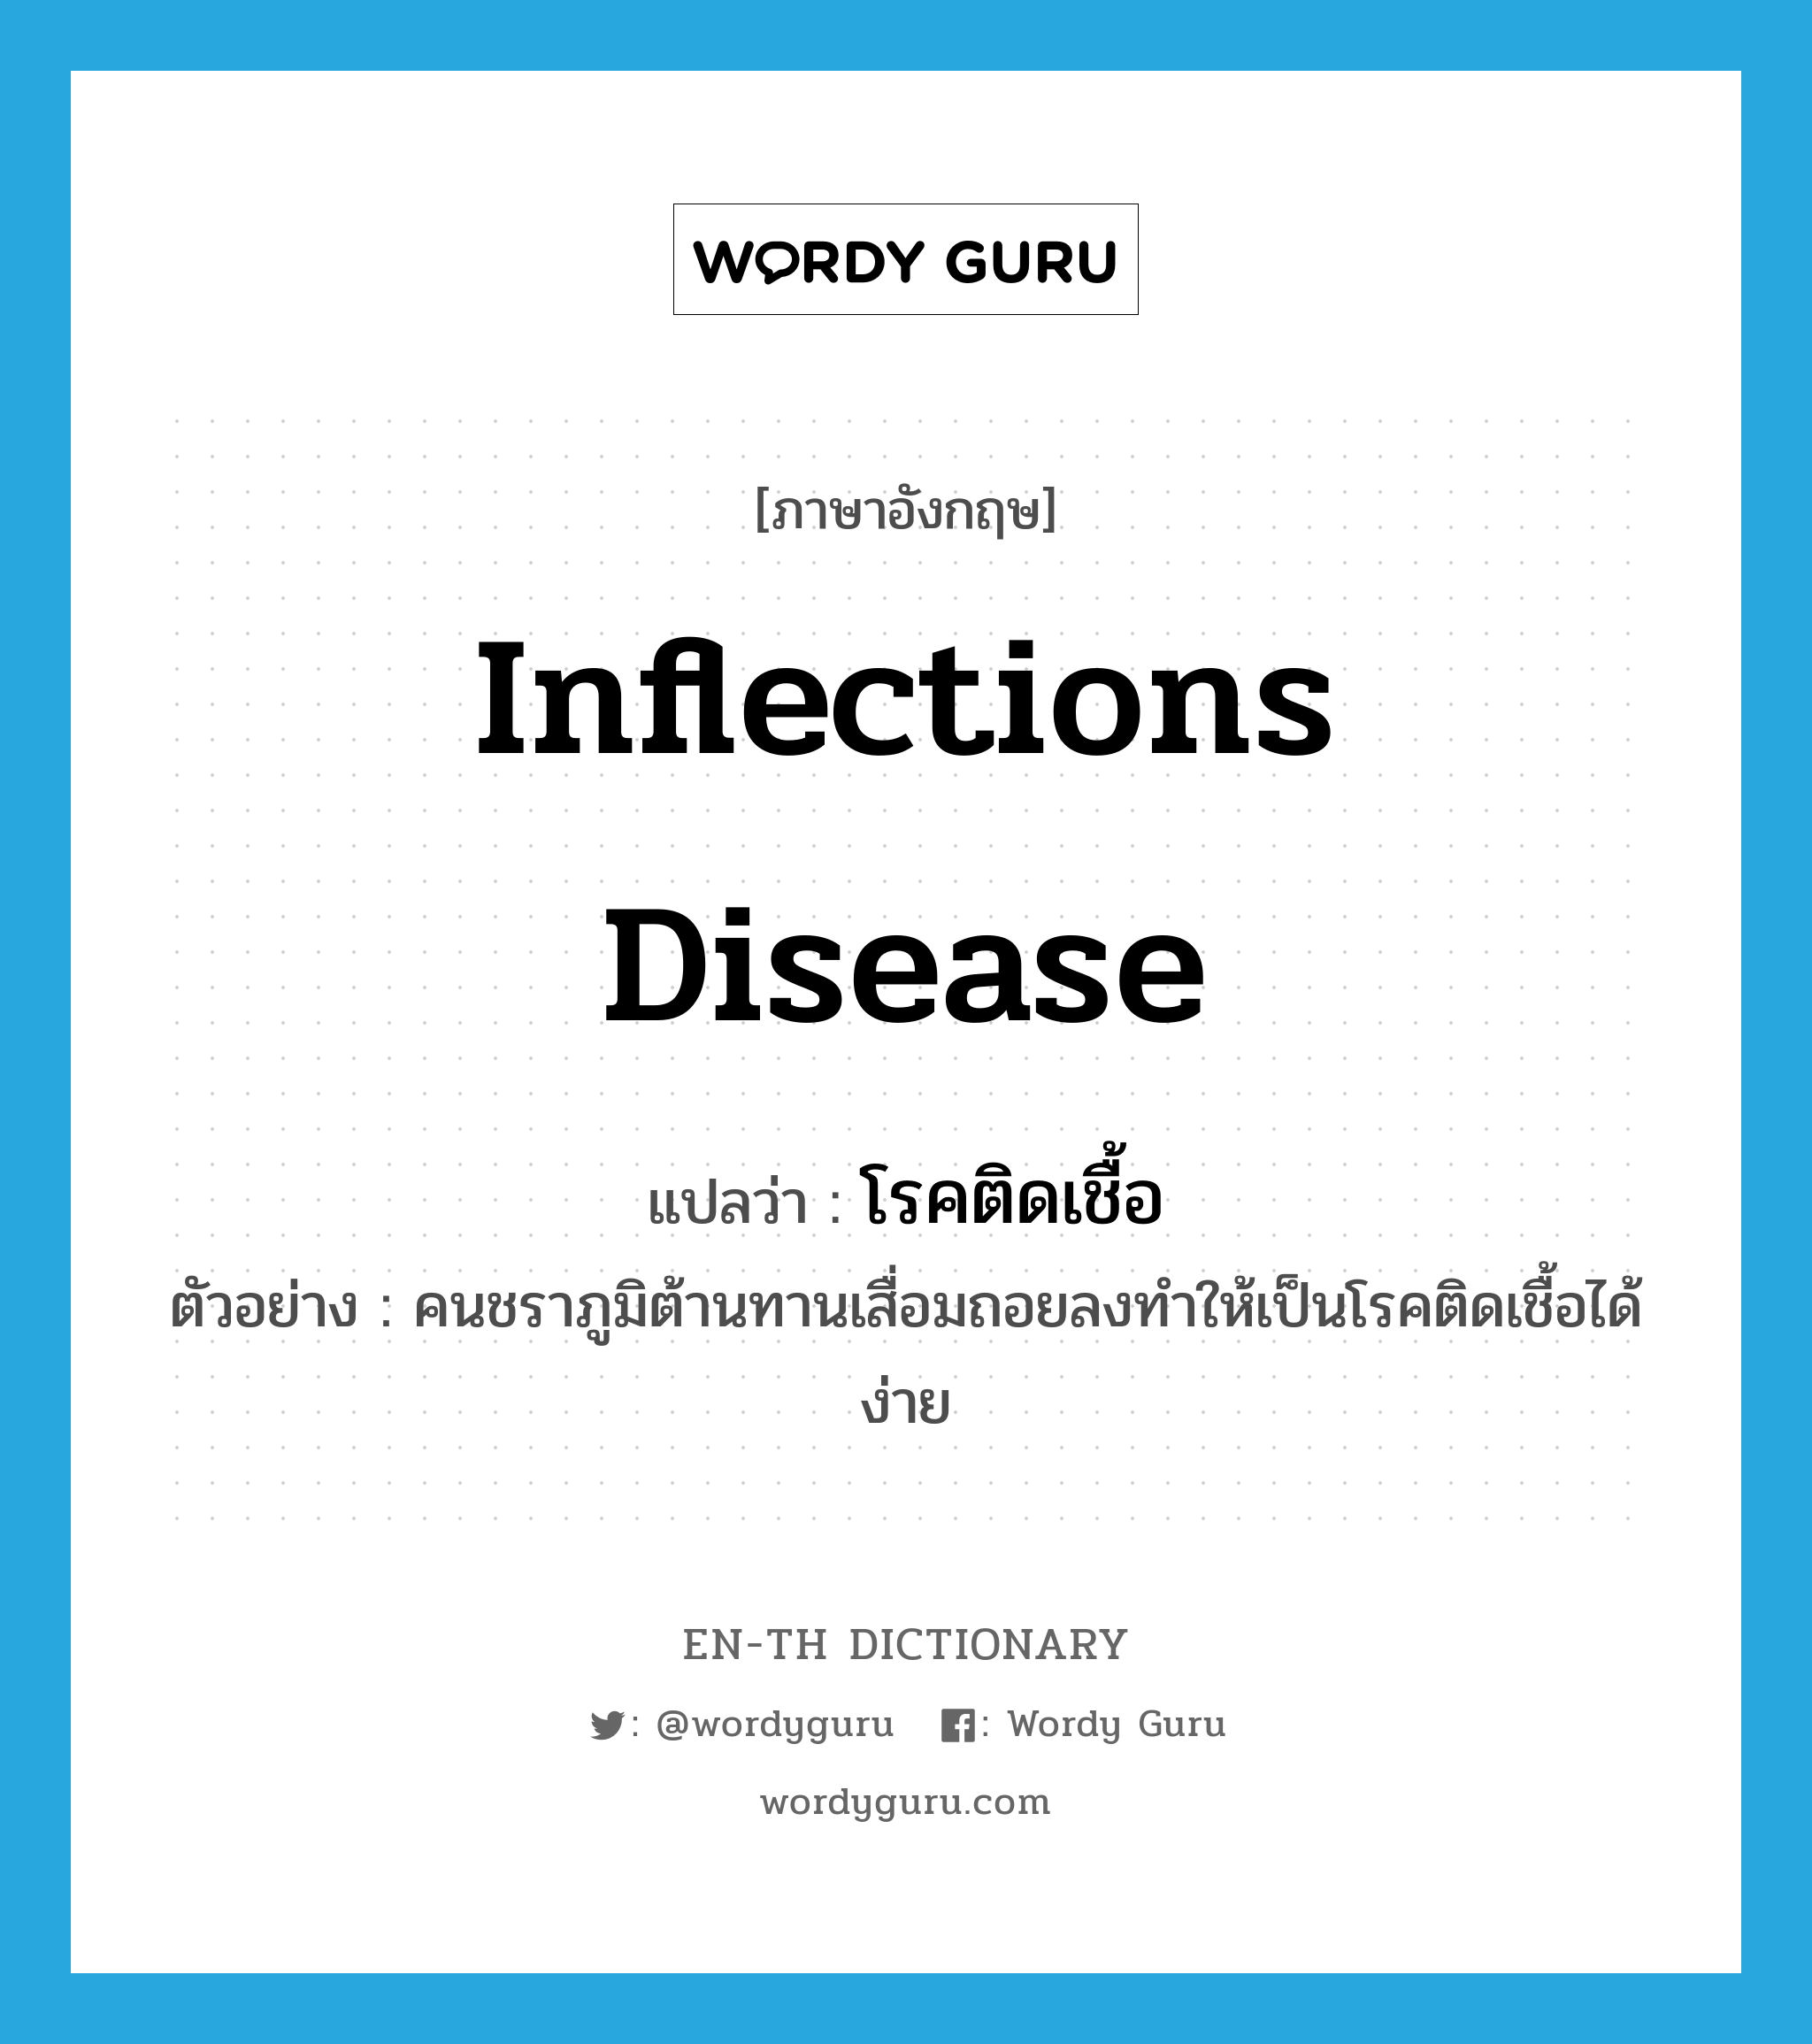 inflections disease แปลว่า?, คำศัพท์ภาษาอังกฤษ inflections disease แปลว่า โรคติดเชื้อ ประเภท N ตัวอย่าง คนชราภูมิต้านทานเสื่อมถอยลงทำให้เป็นโรคติดเชื้อได้ง่าย หมวด N